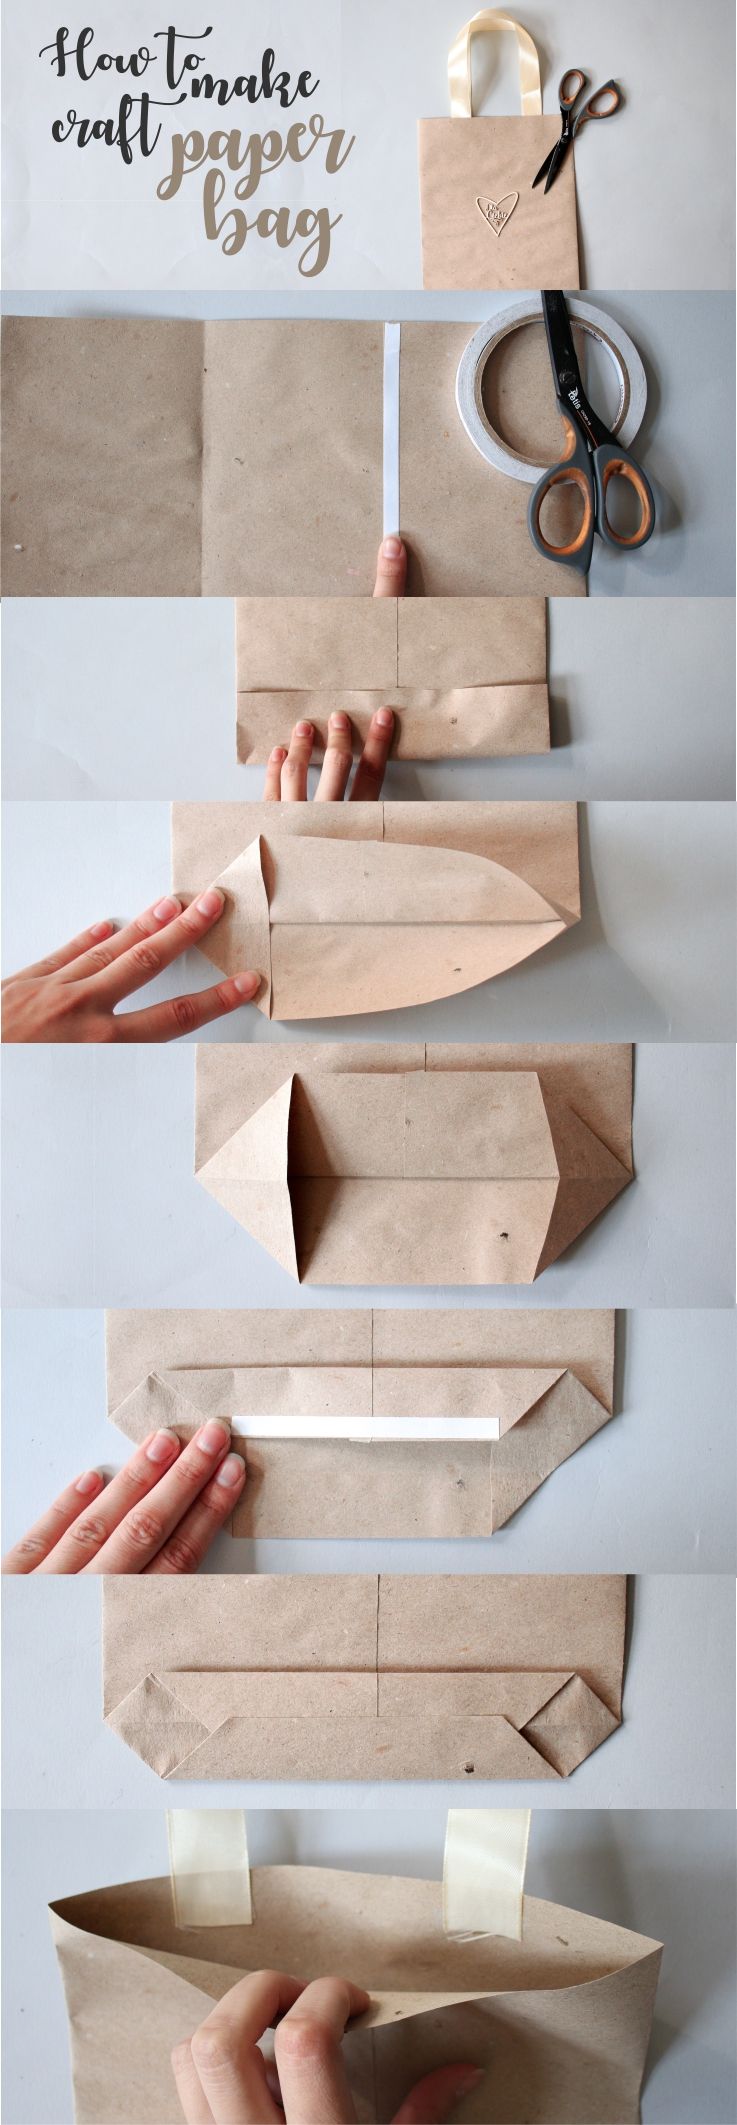 Как сделать бумажный пакетик своими руками: как сделать пакетик из бумаги? Как правильно сложить бумажный упаковочный пакет?